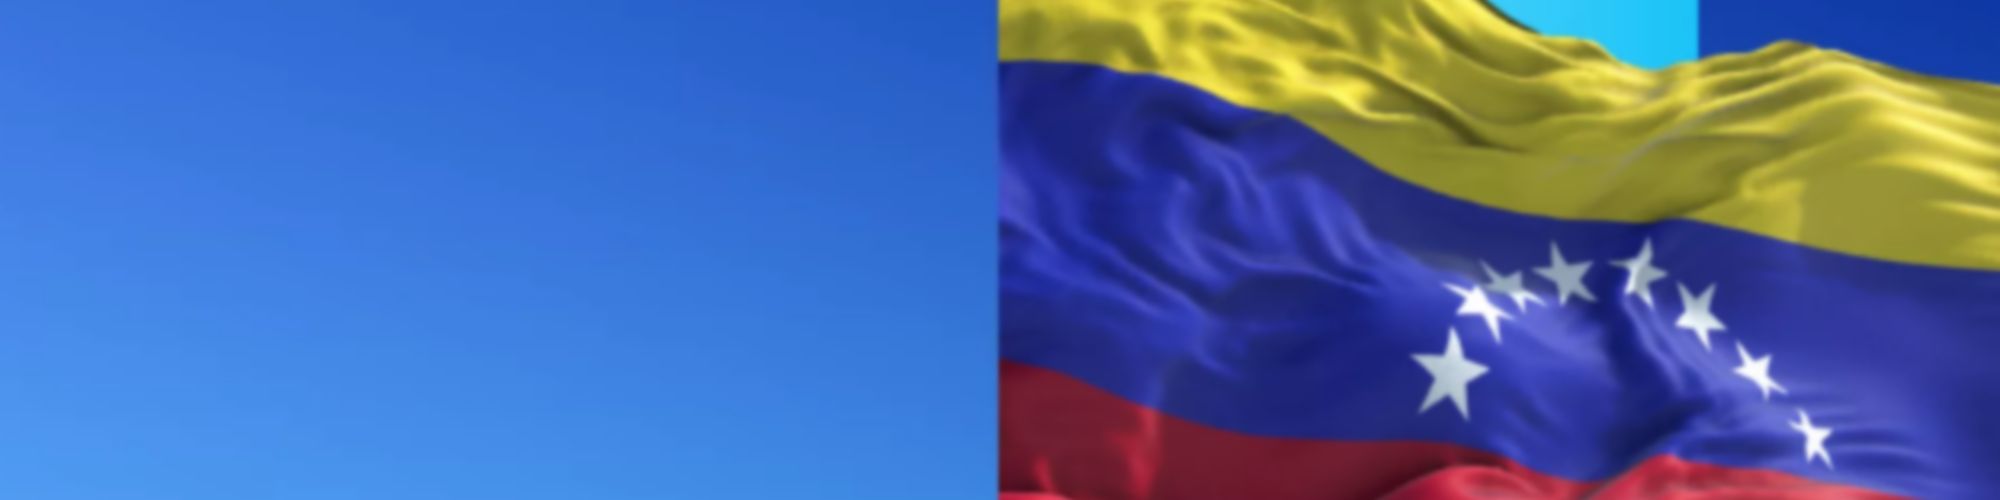 Invertir en Venezuela